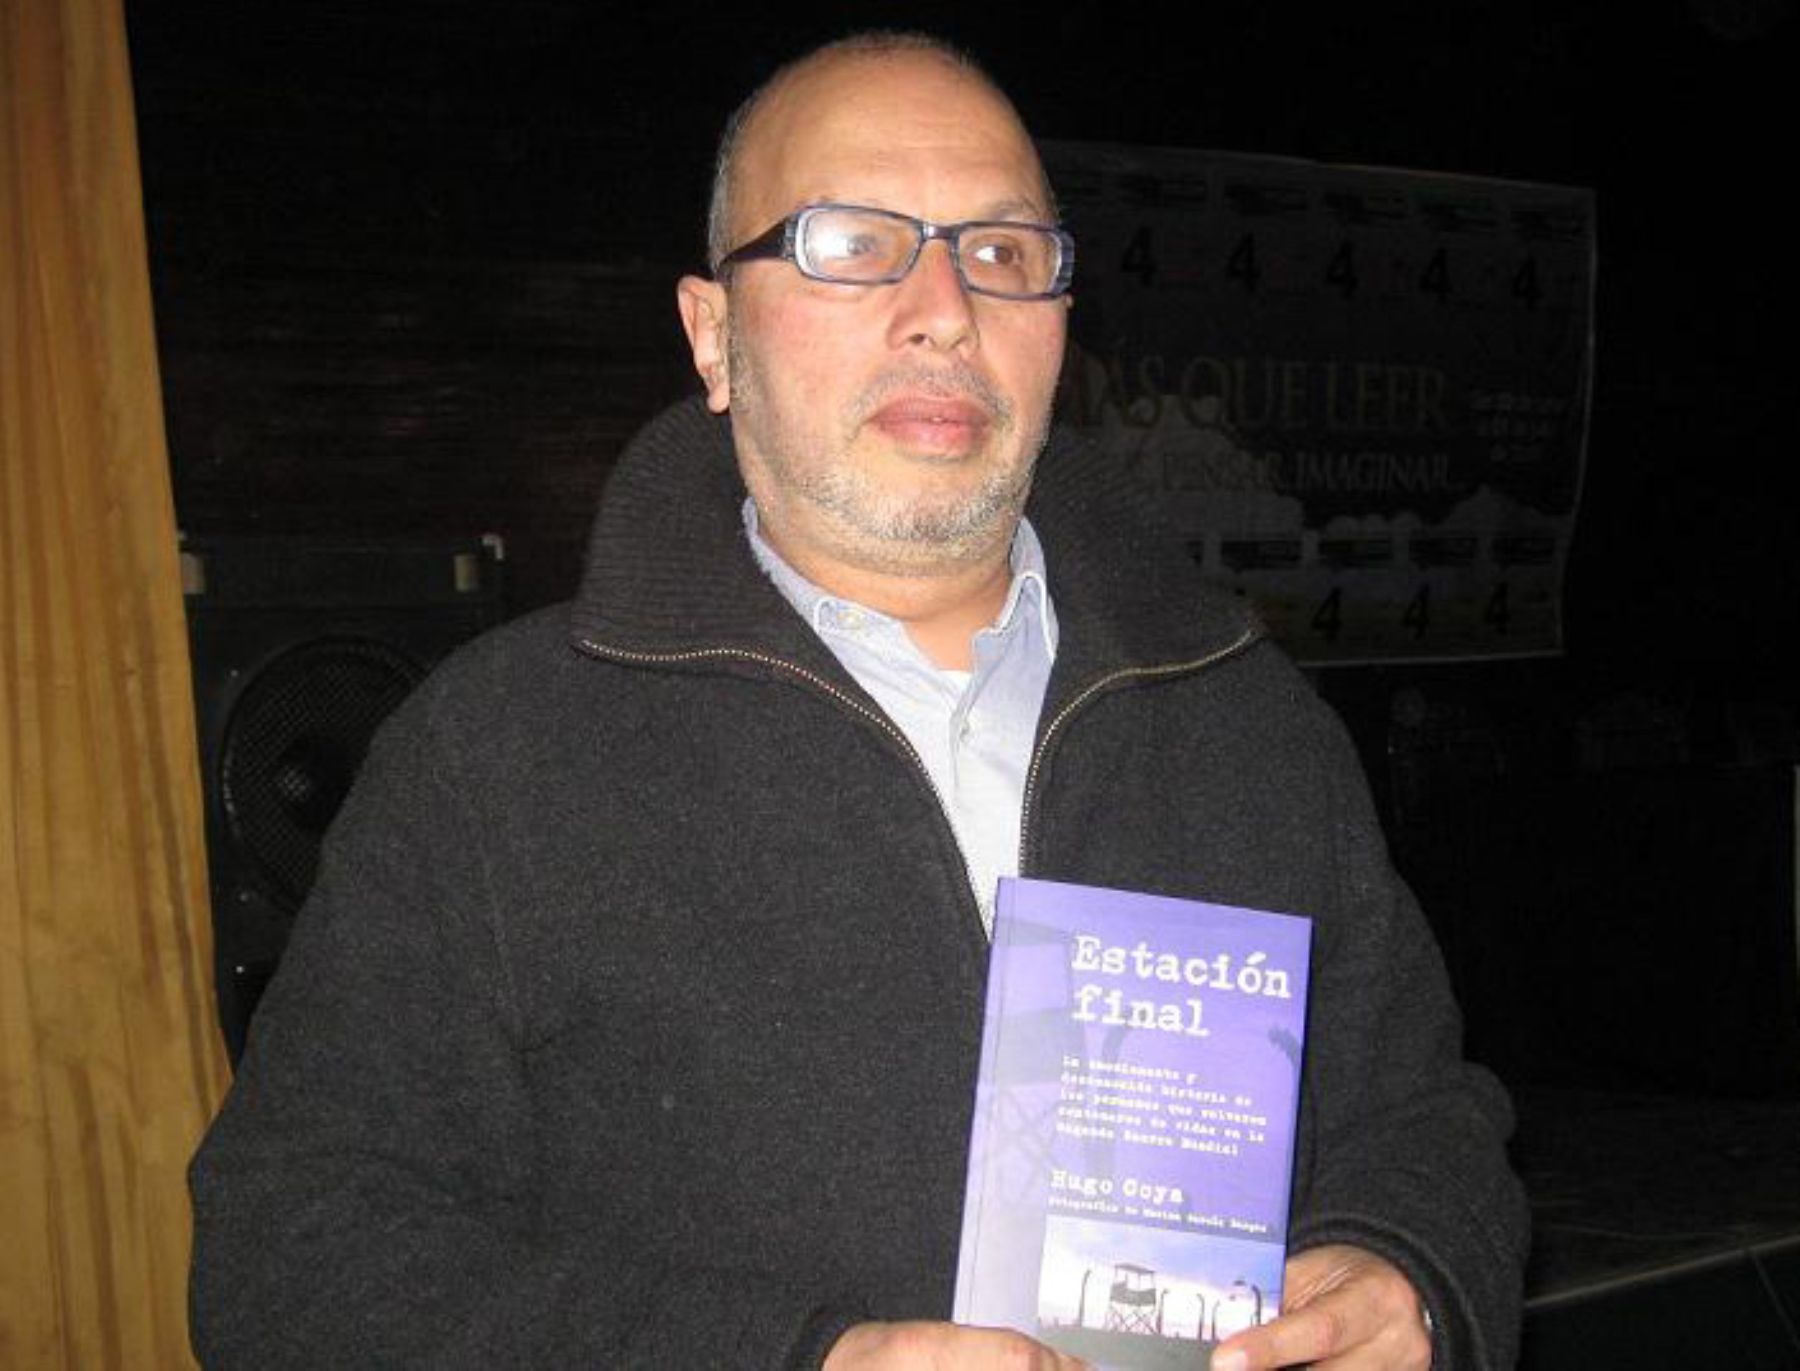 Periodista Hugo Coya presenta su libro Estación Final, en la IV Feria del Libro de Huancayo.